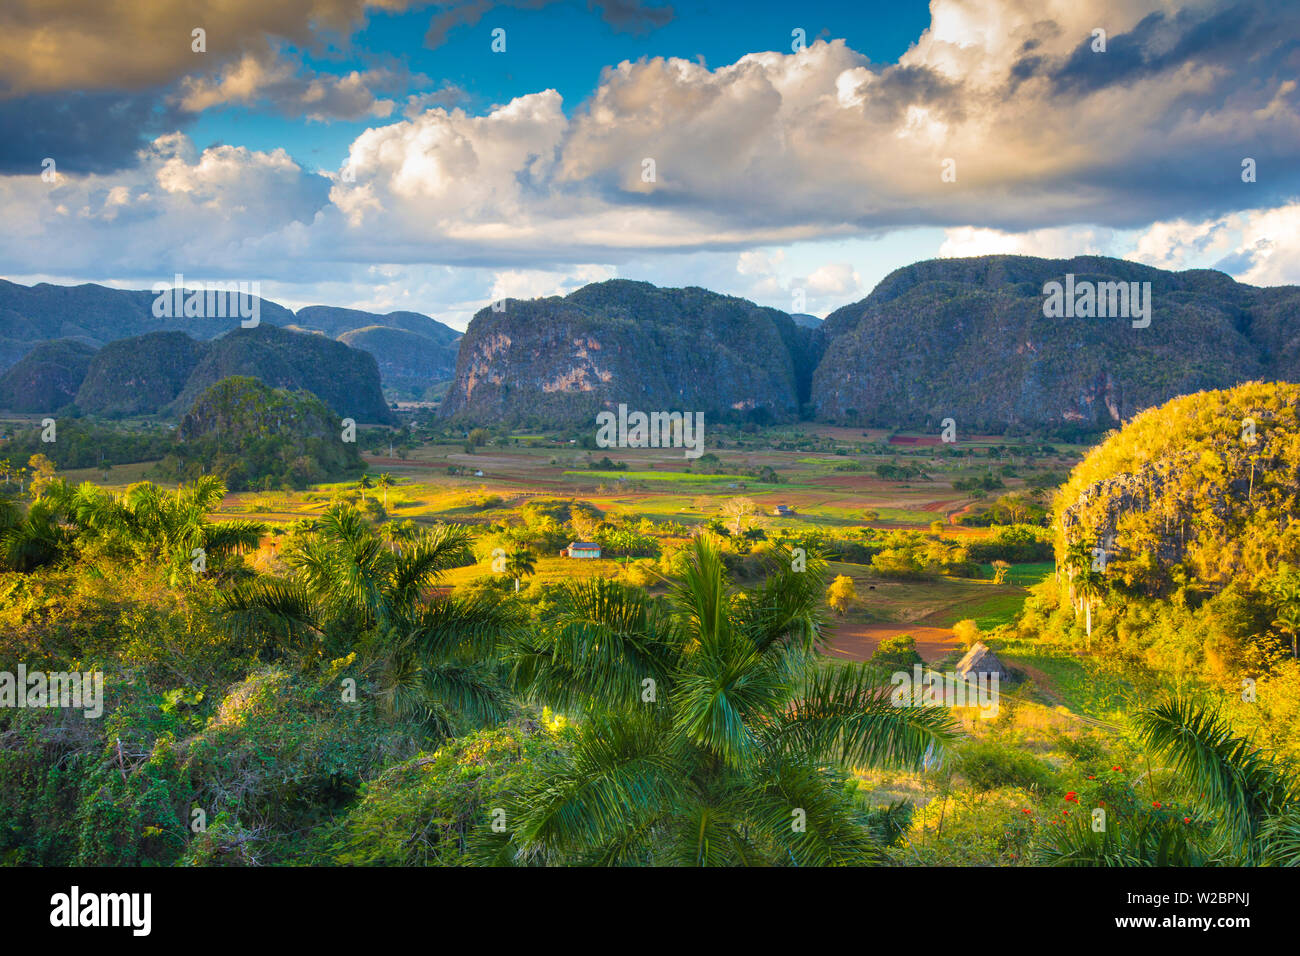 Vinales Valley, Pinar del Rio Province, Cuba Stock Photo